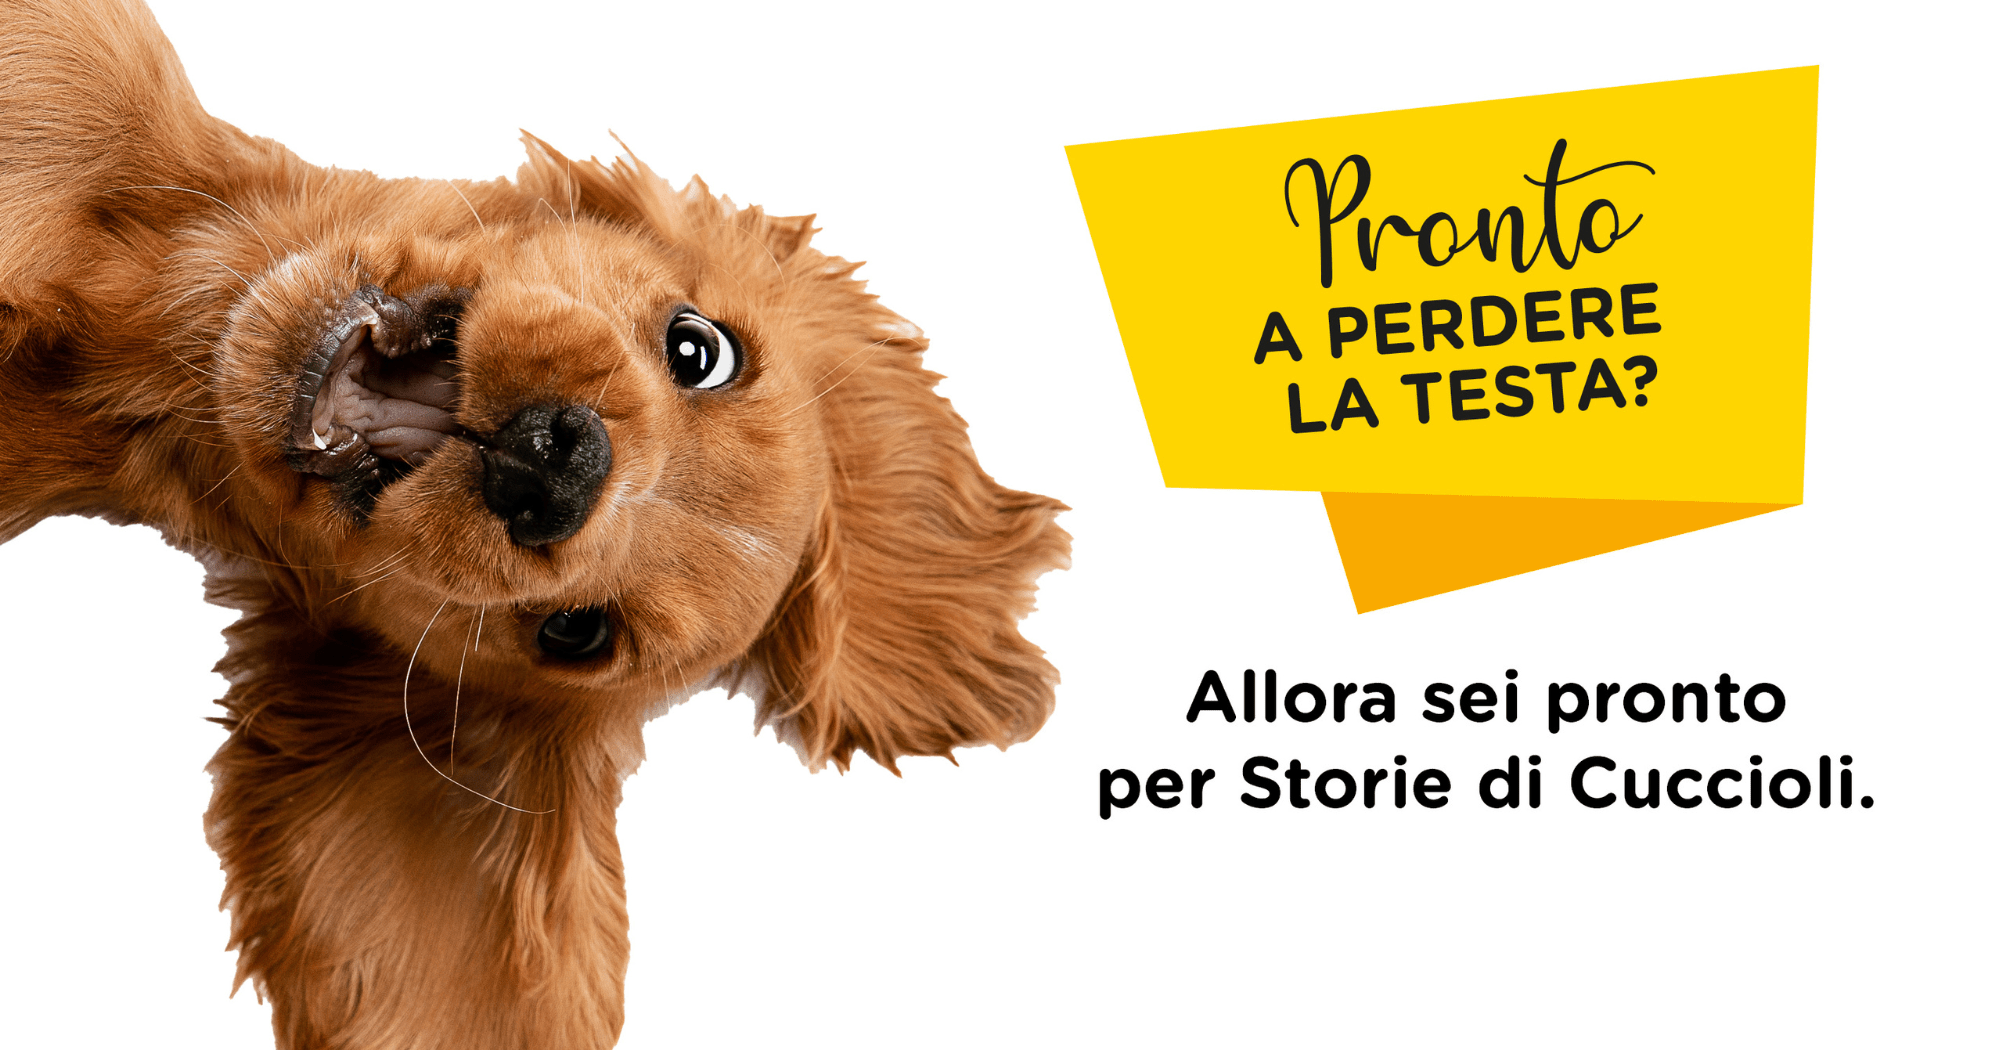 Storie di Cuccioli: il programma dedicato ai clienti Arcacard